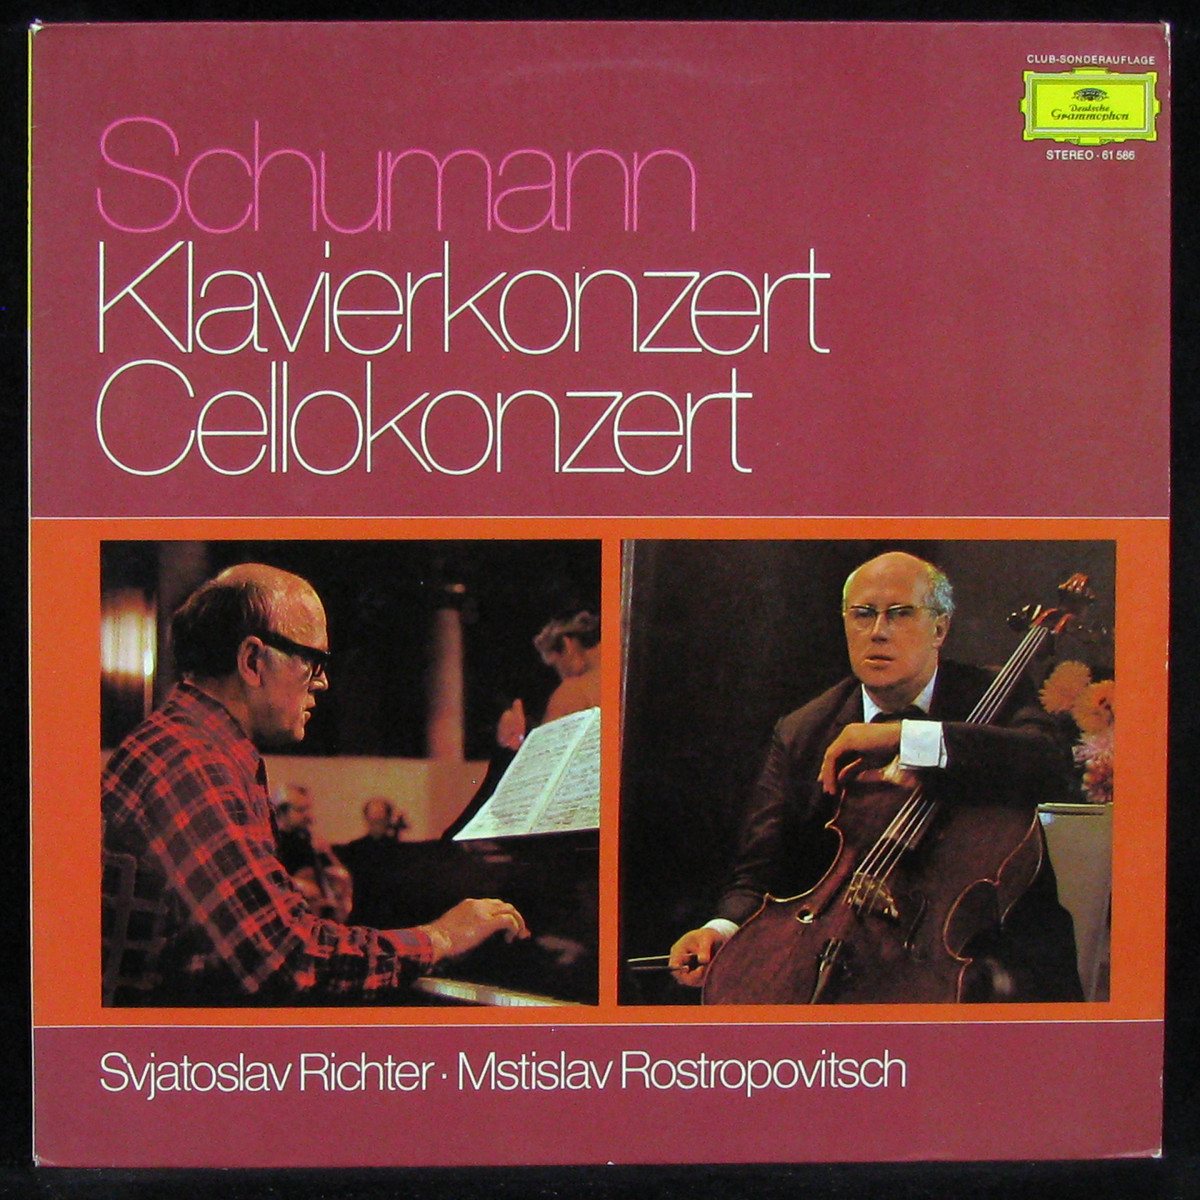 LP Mstislav Rostropovich / Svjatoslav Richter — Schumann: Klavierkonzert - Cellokonzert (club edition) фото